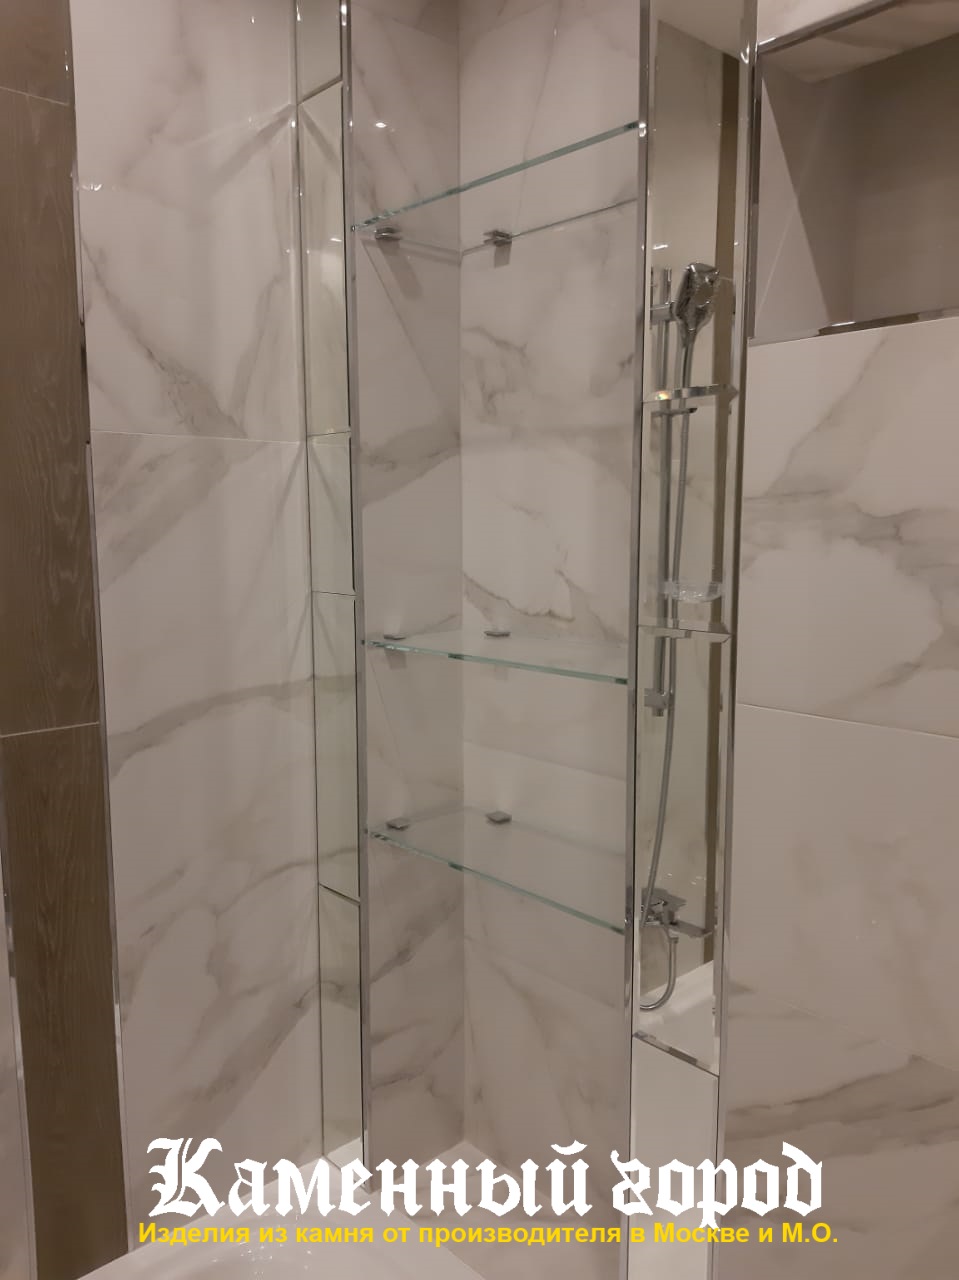 Столешница в ванной комнате из камня LG Hi Macs - г.Москва